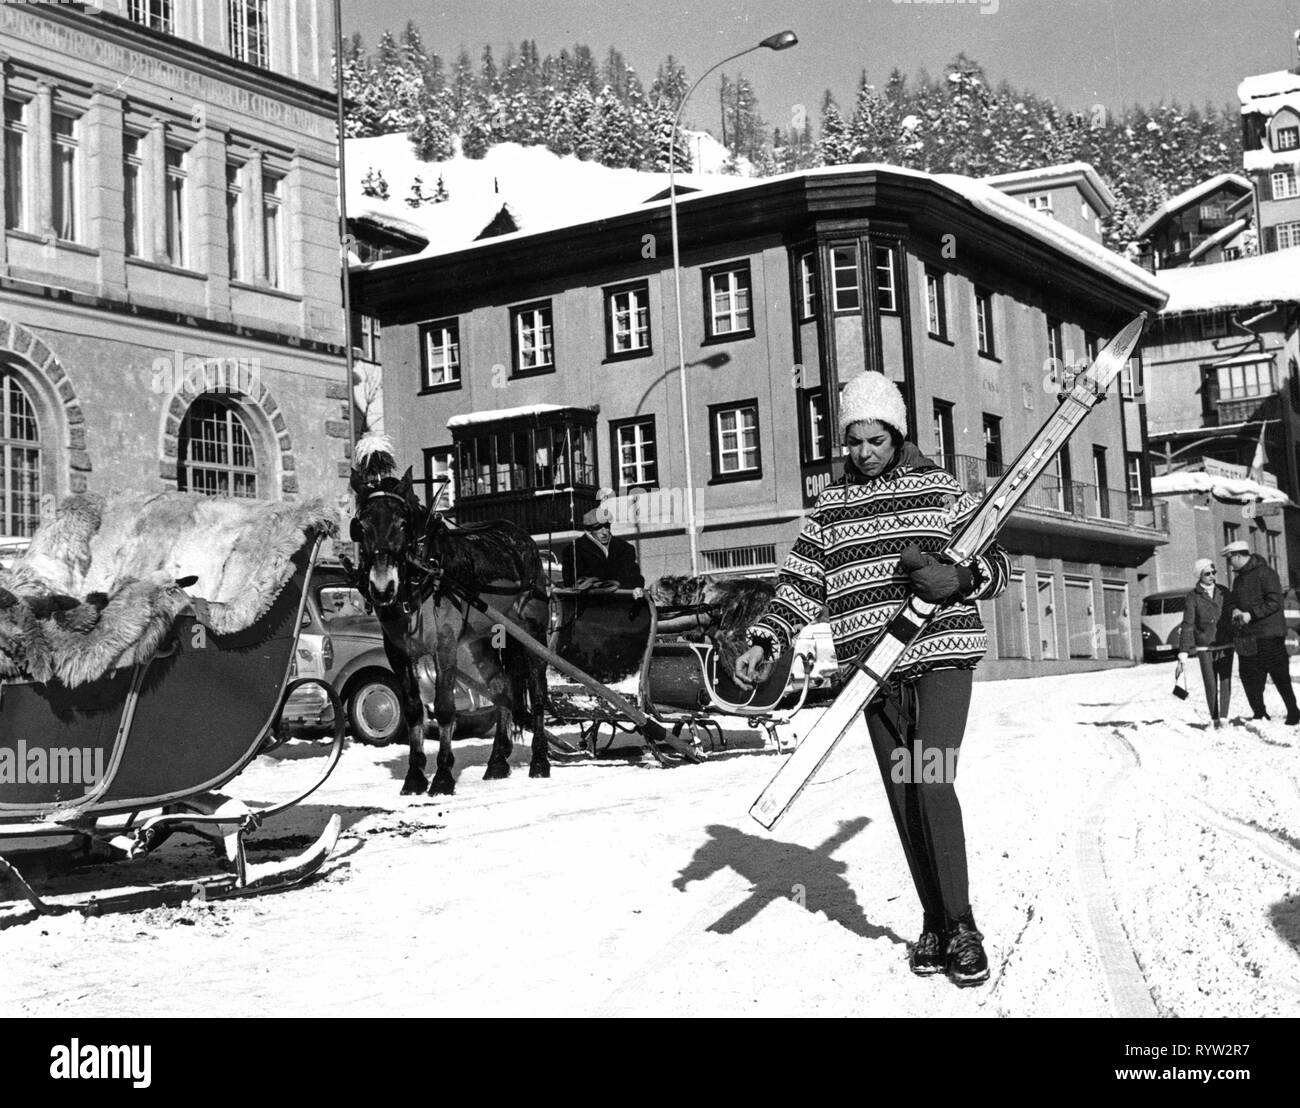 Ski 1960s Stockfotos und -bilder Kaufen - Alamy